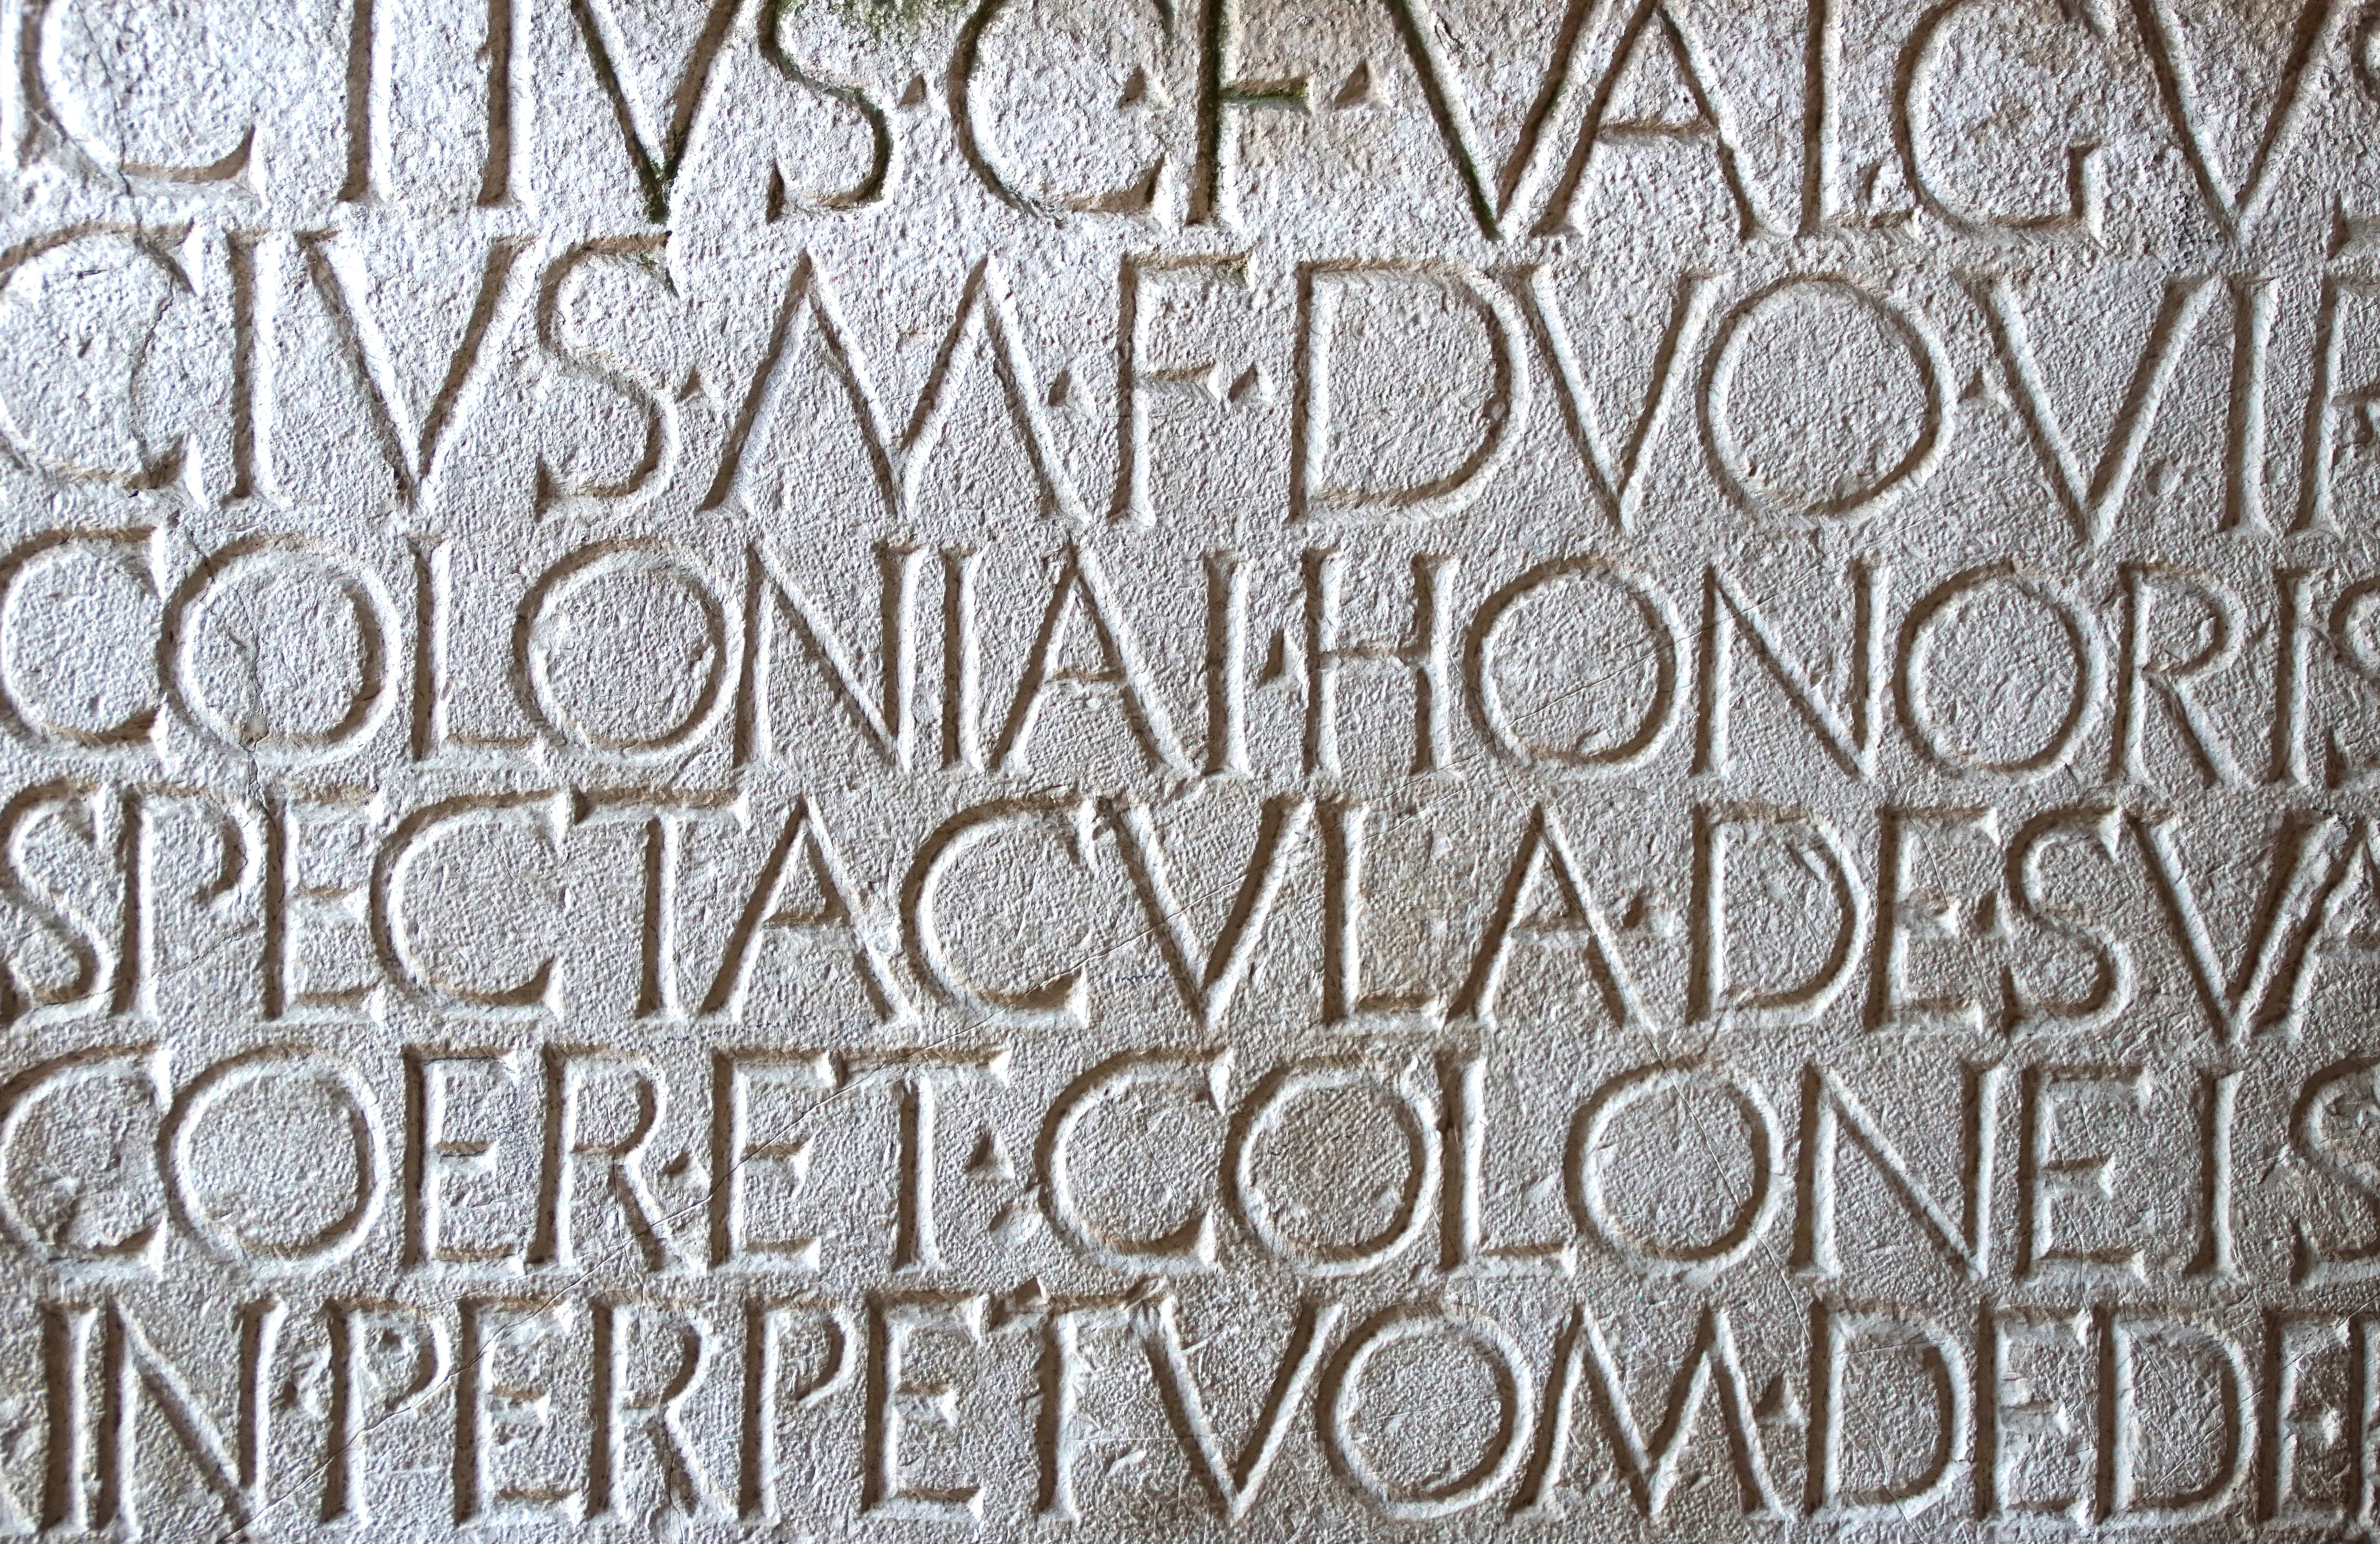 pompeii, latin, roman, engraving, text, italy, pierre, writing